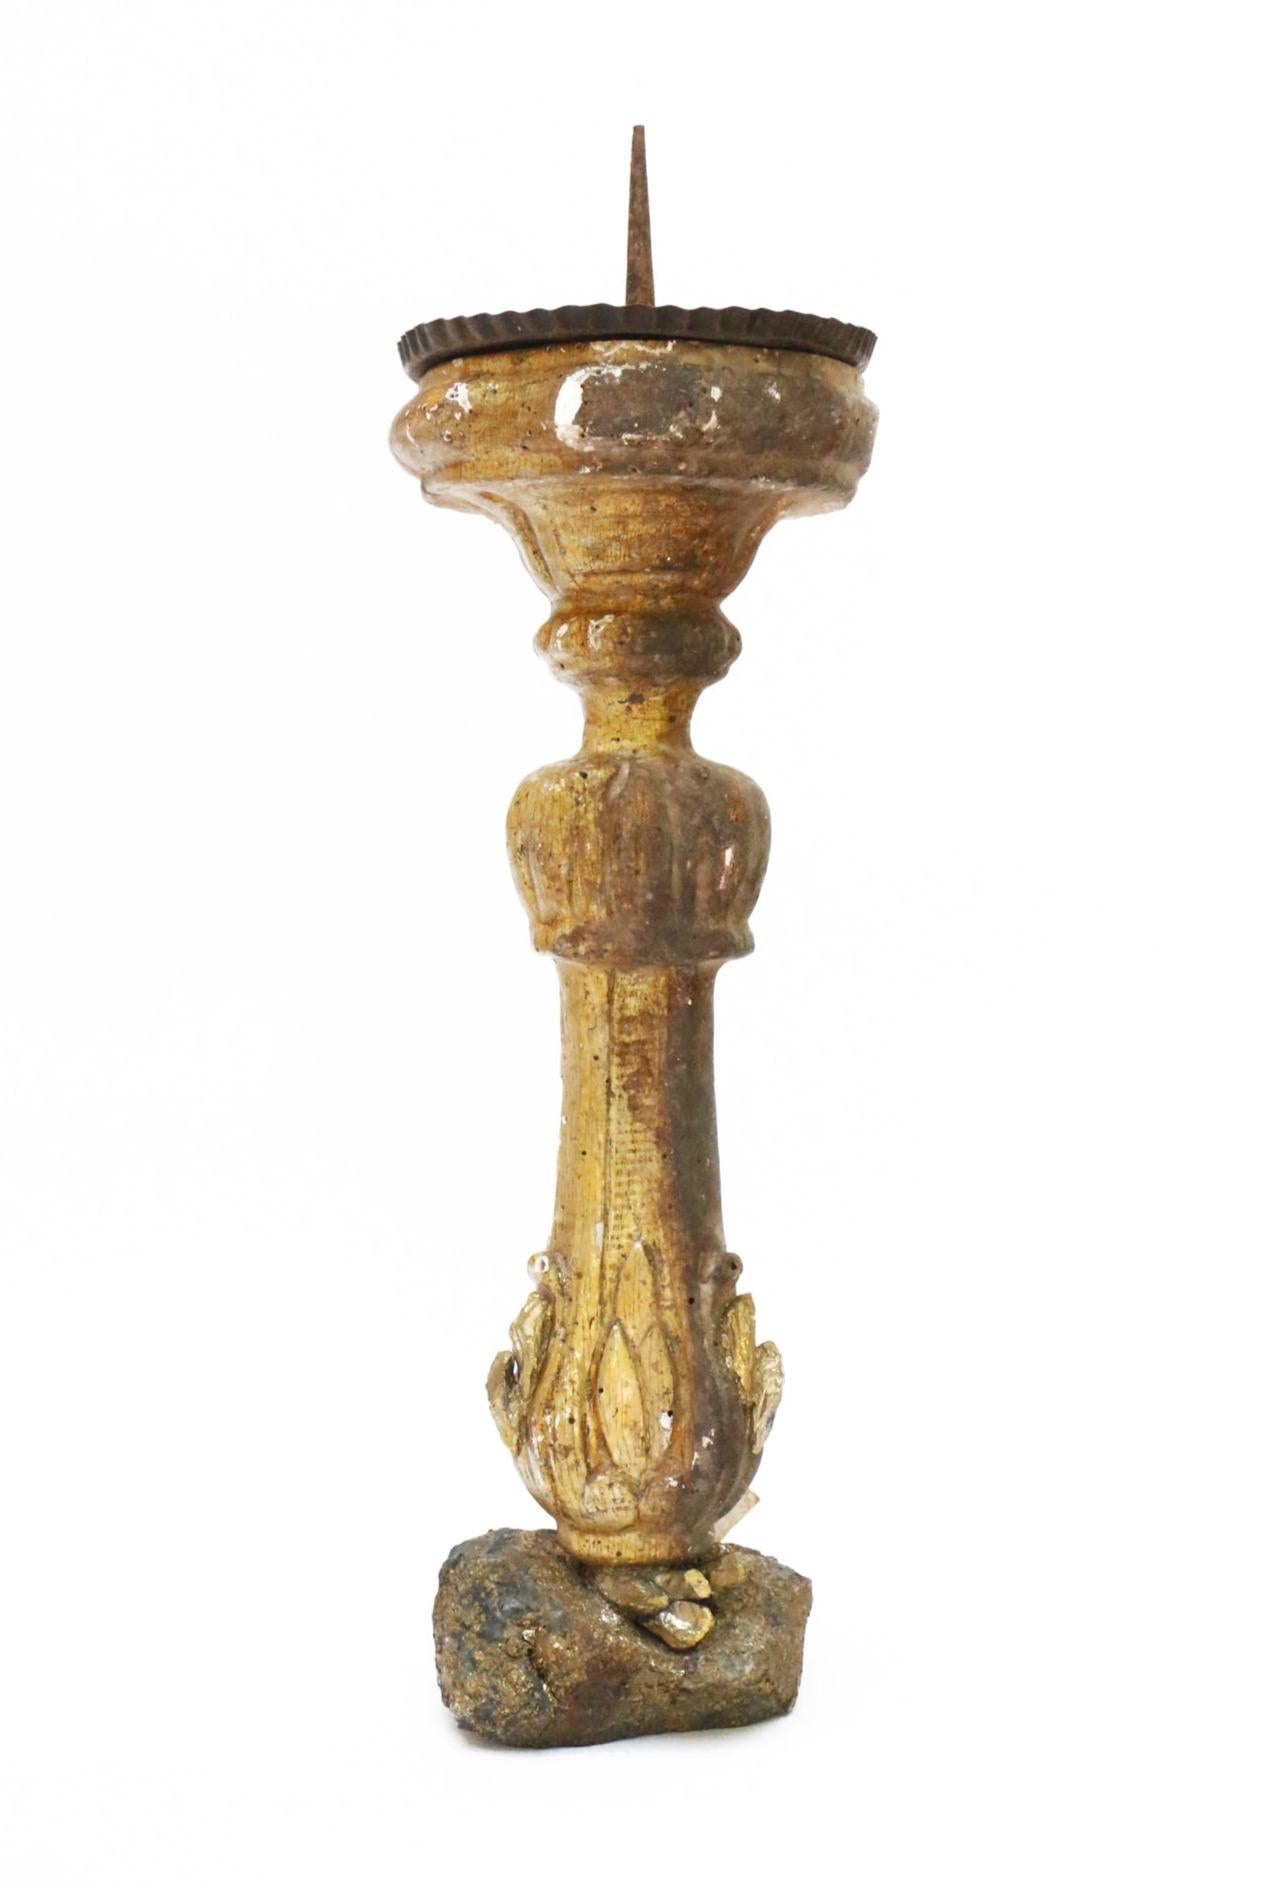 Skulpturaler italienischer vergoldeter Kerzenleuchter aus dem 17. Jahrhundert, montiert auf Chalkopyrit und verziert mit vergoldetem Kyanit.

Dieses Fragment war ursprünglich Teil eines Kerzenständers aus einer Kirche in Italien. Es ist von der Zeit